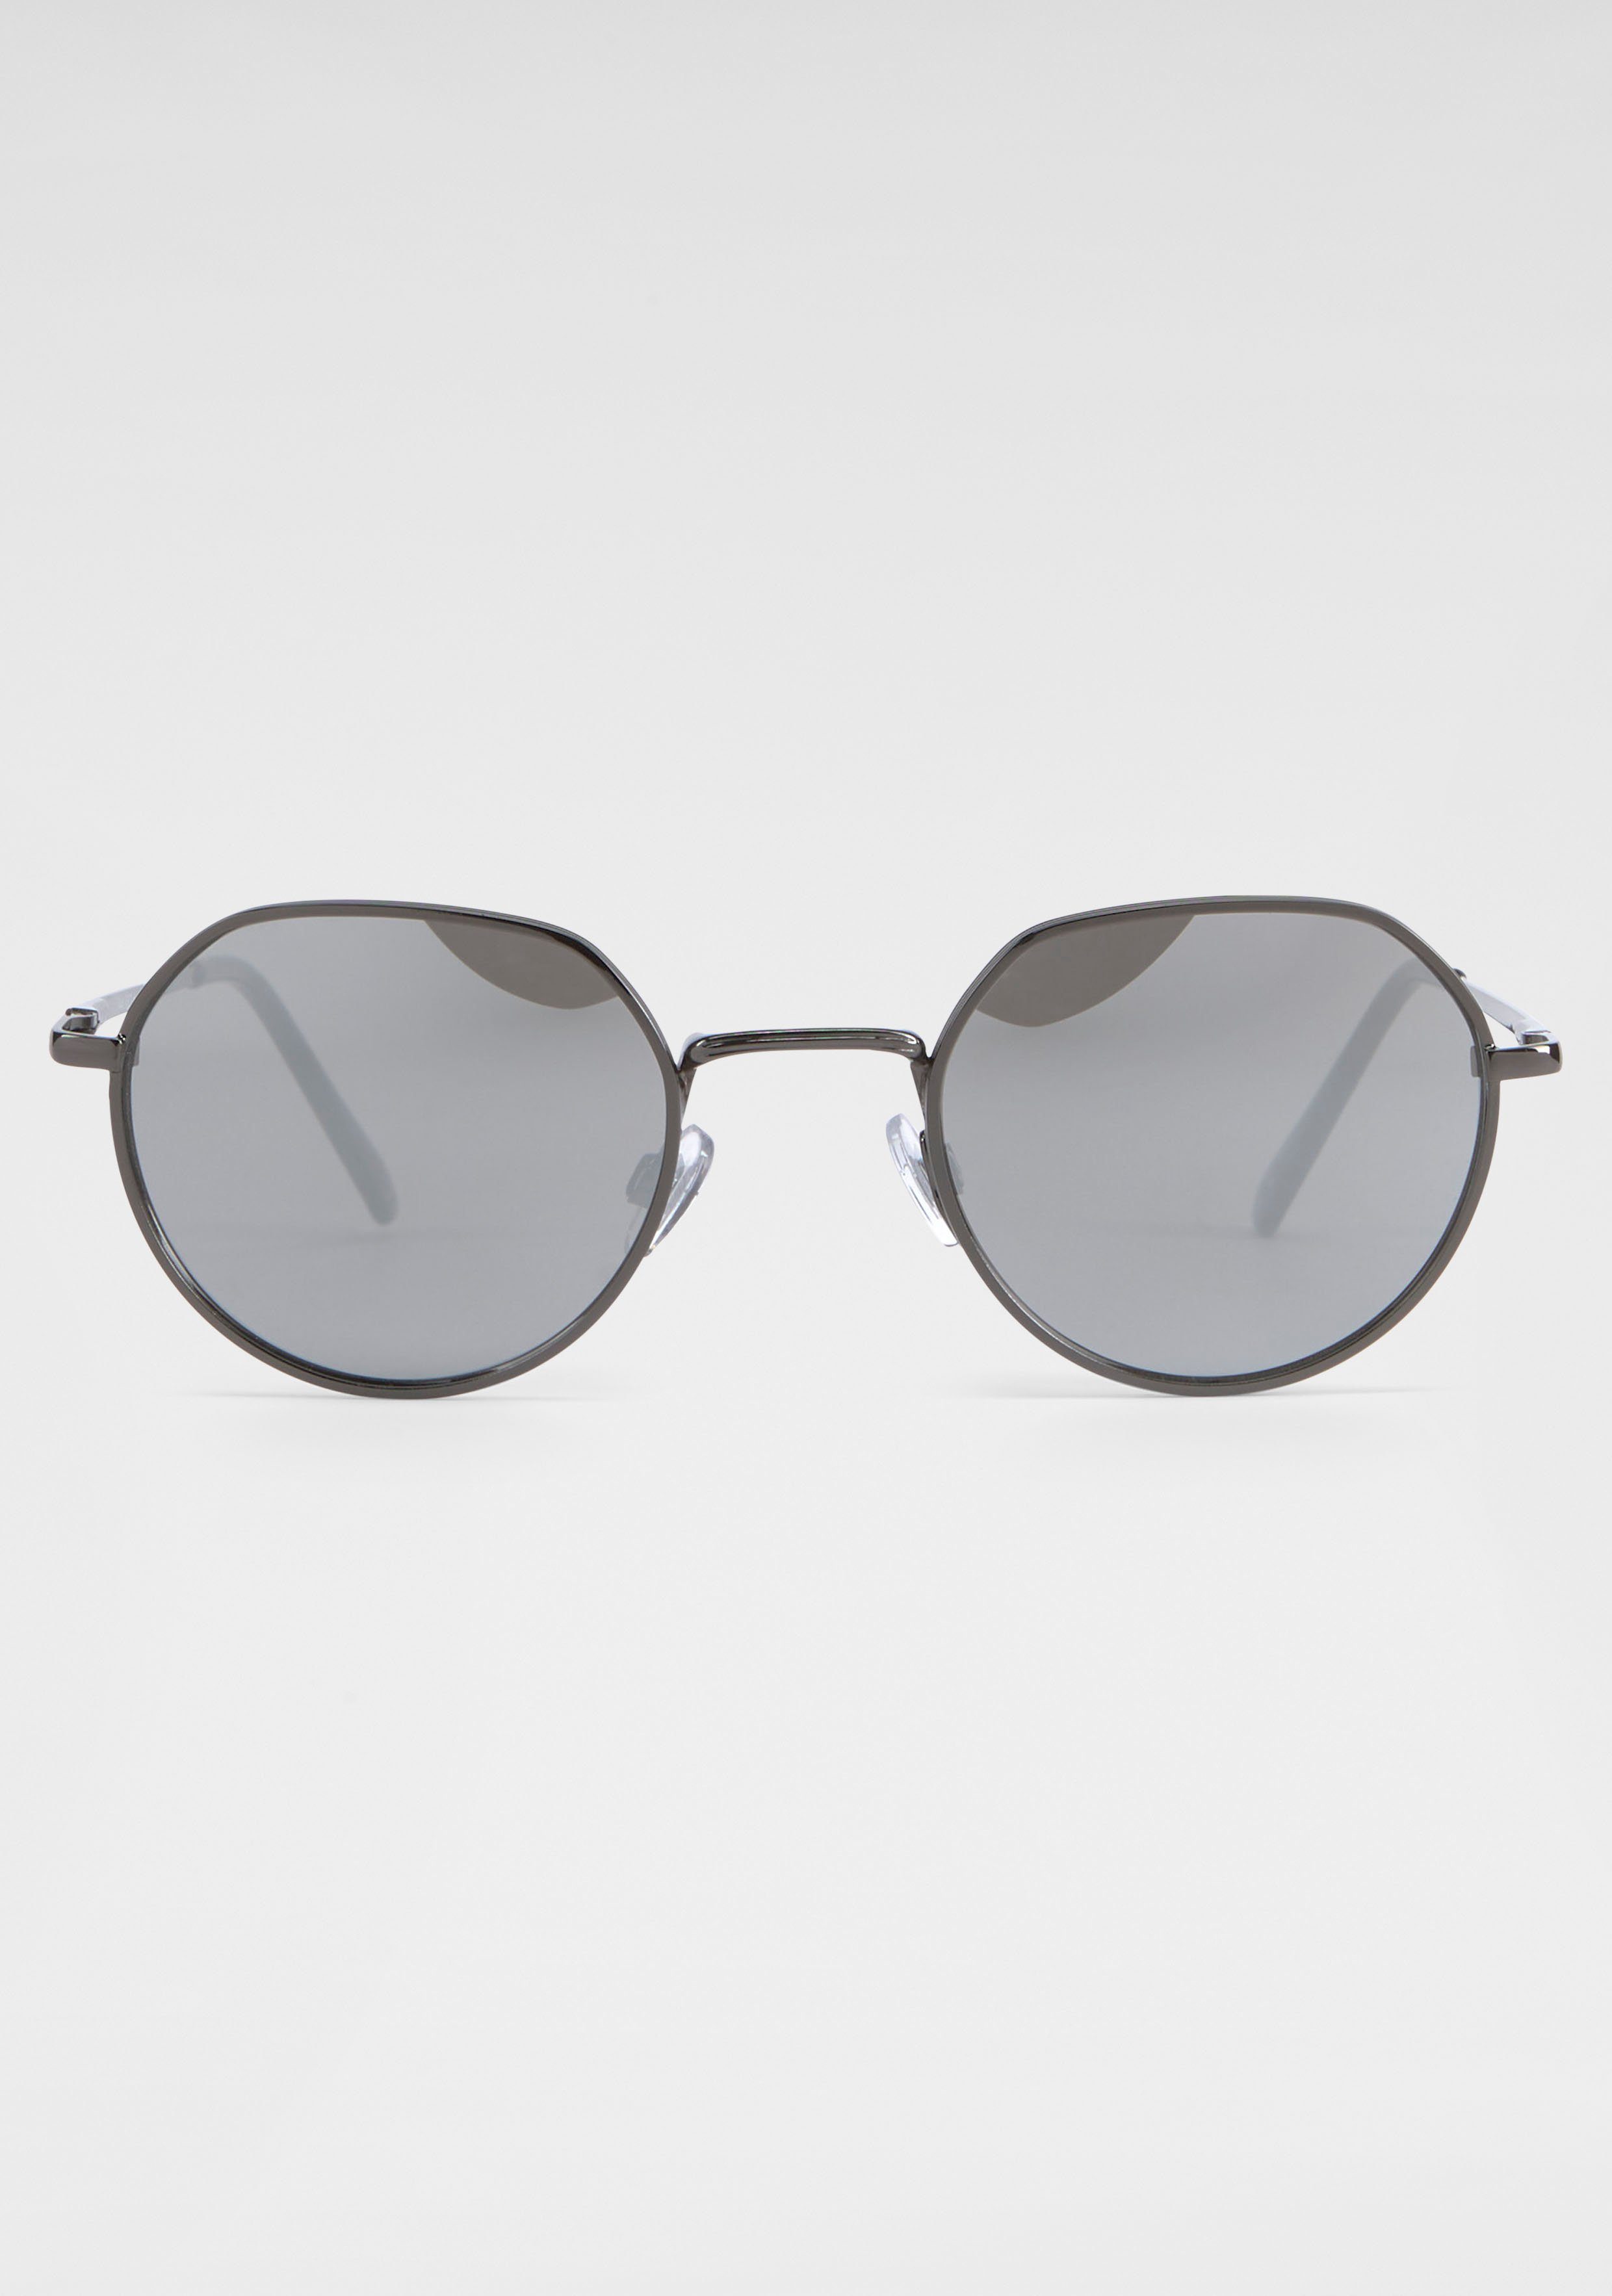 Runde silberne Sonnenbrillen online kaufen | OTTO